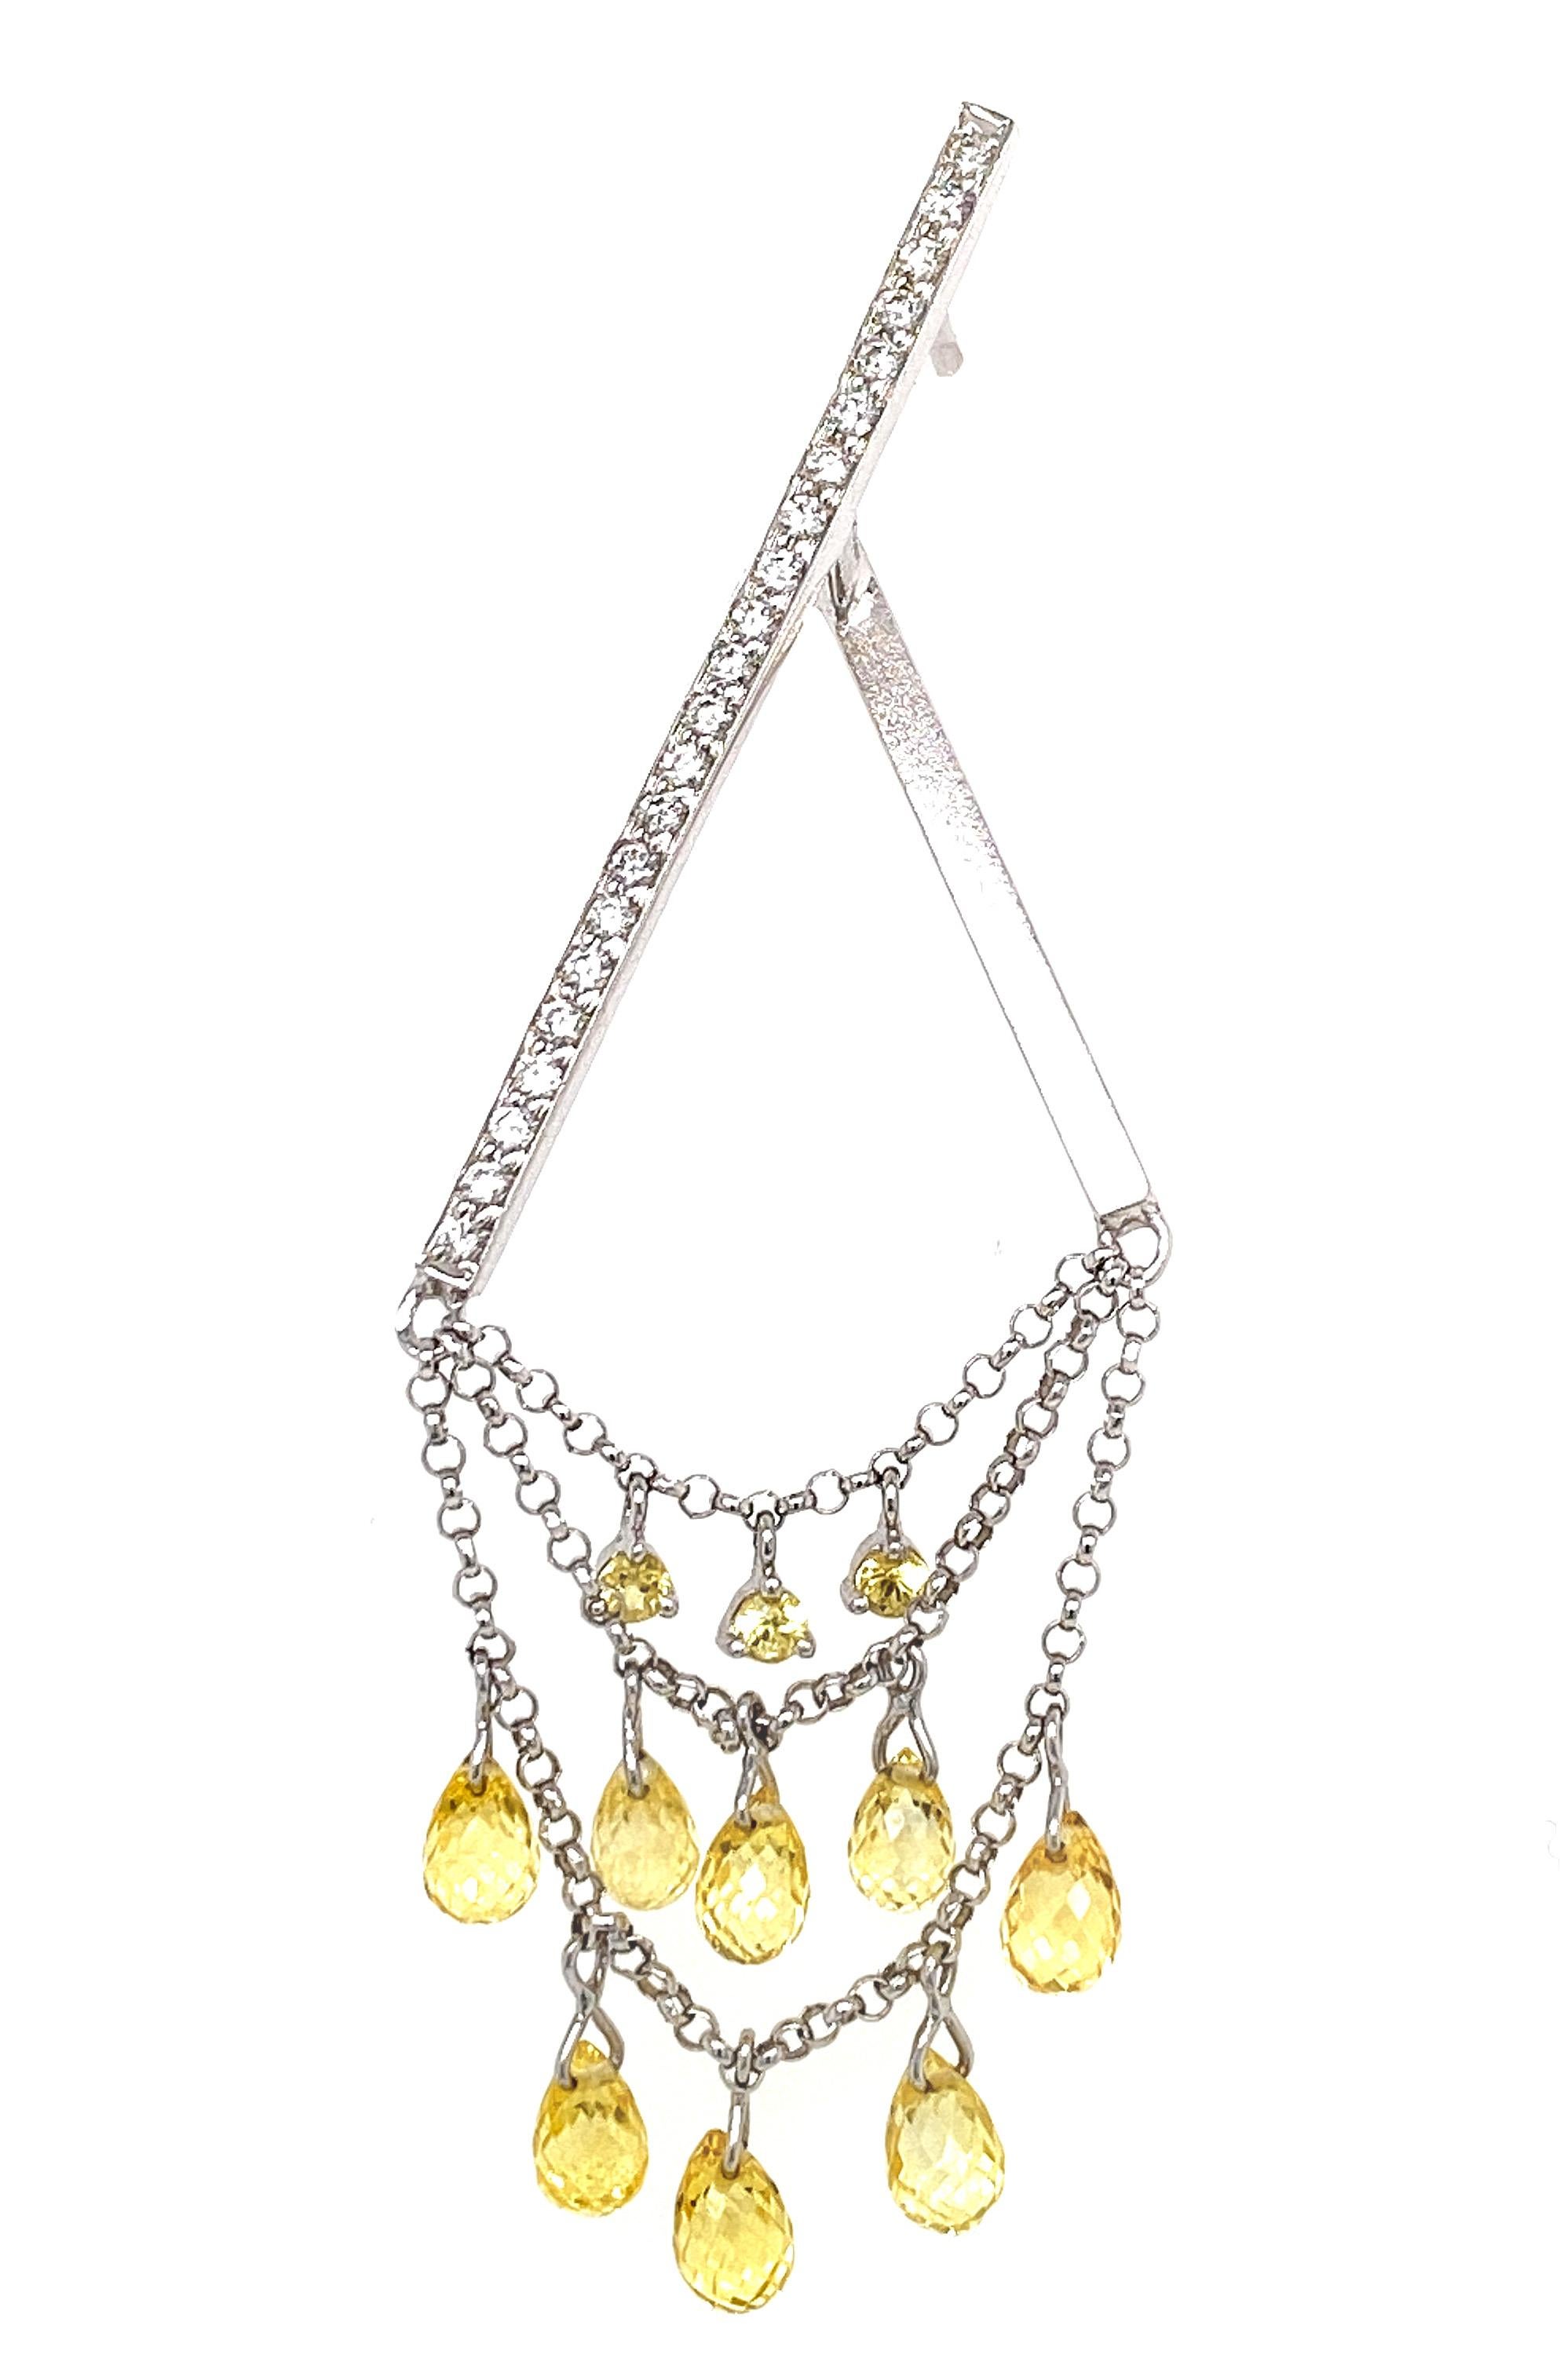 Briolette Cut Briolette Fancy Sapphire and Diamond Drop Earrings in 18 Karat Gold